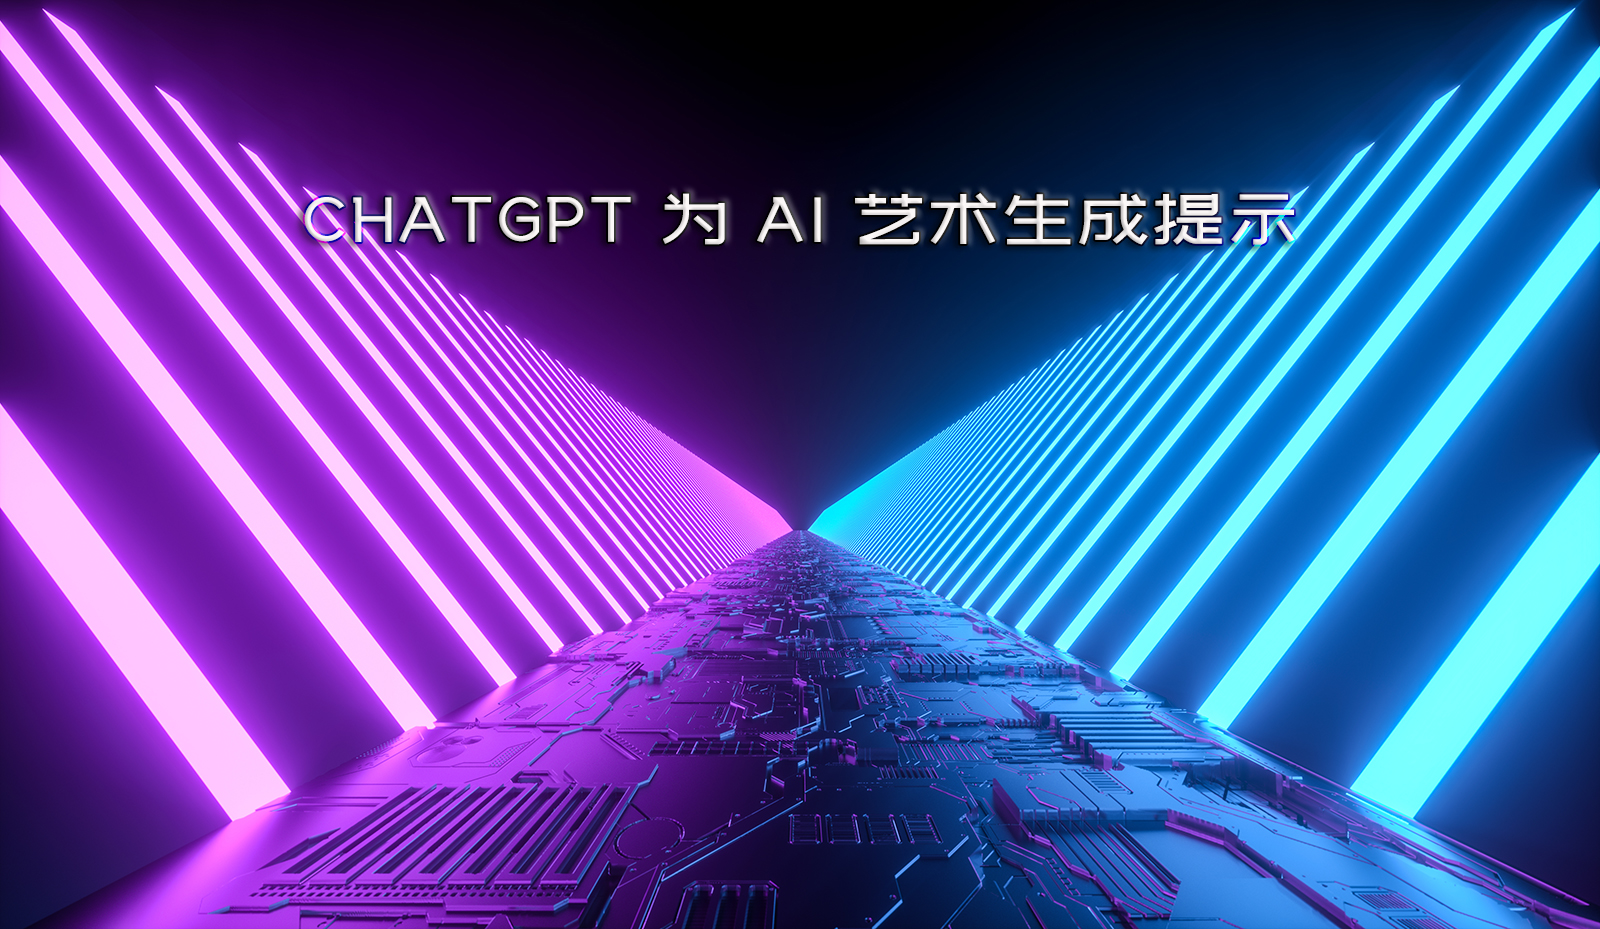 ChatGPT 为 Midjourney 或 DALL-E 等 AI 艺术生成提示